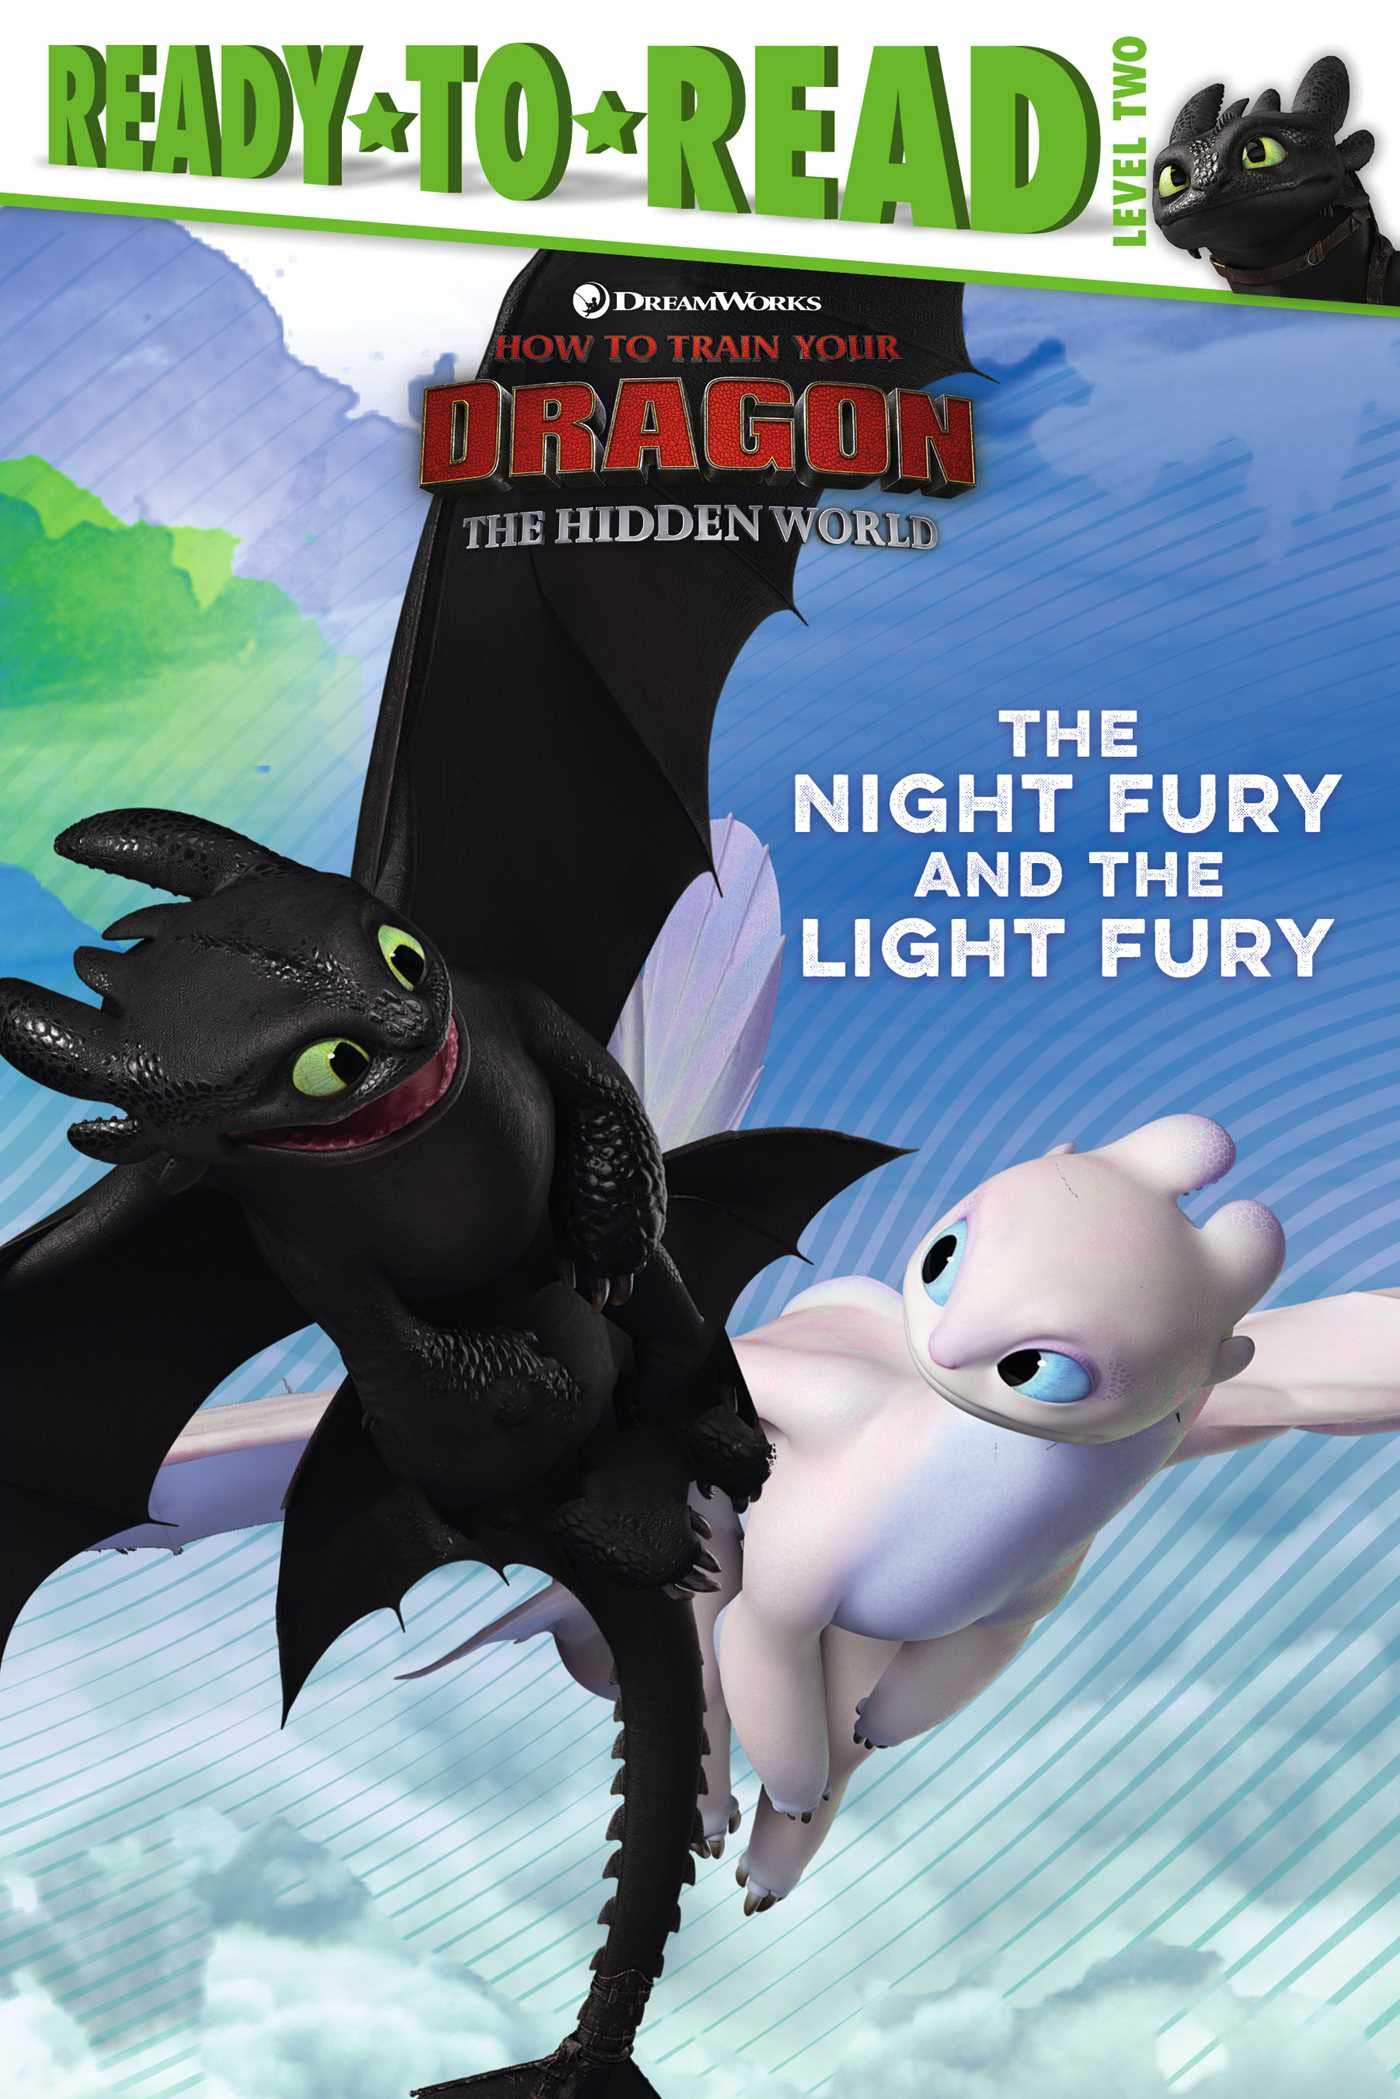 Sách Ready-to-Read, Level 2 về The Night Fury and the Light Fury sẽ là món quà tuyệt vời dành cho fan của loạt phim How to Train Your Dragon. Từ vựng đơn giản và hình ảnh sinh động sẽ giúp trẻ em nâng cao khả năng đọc hiểu của mình.